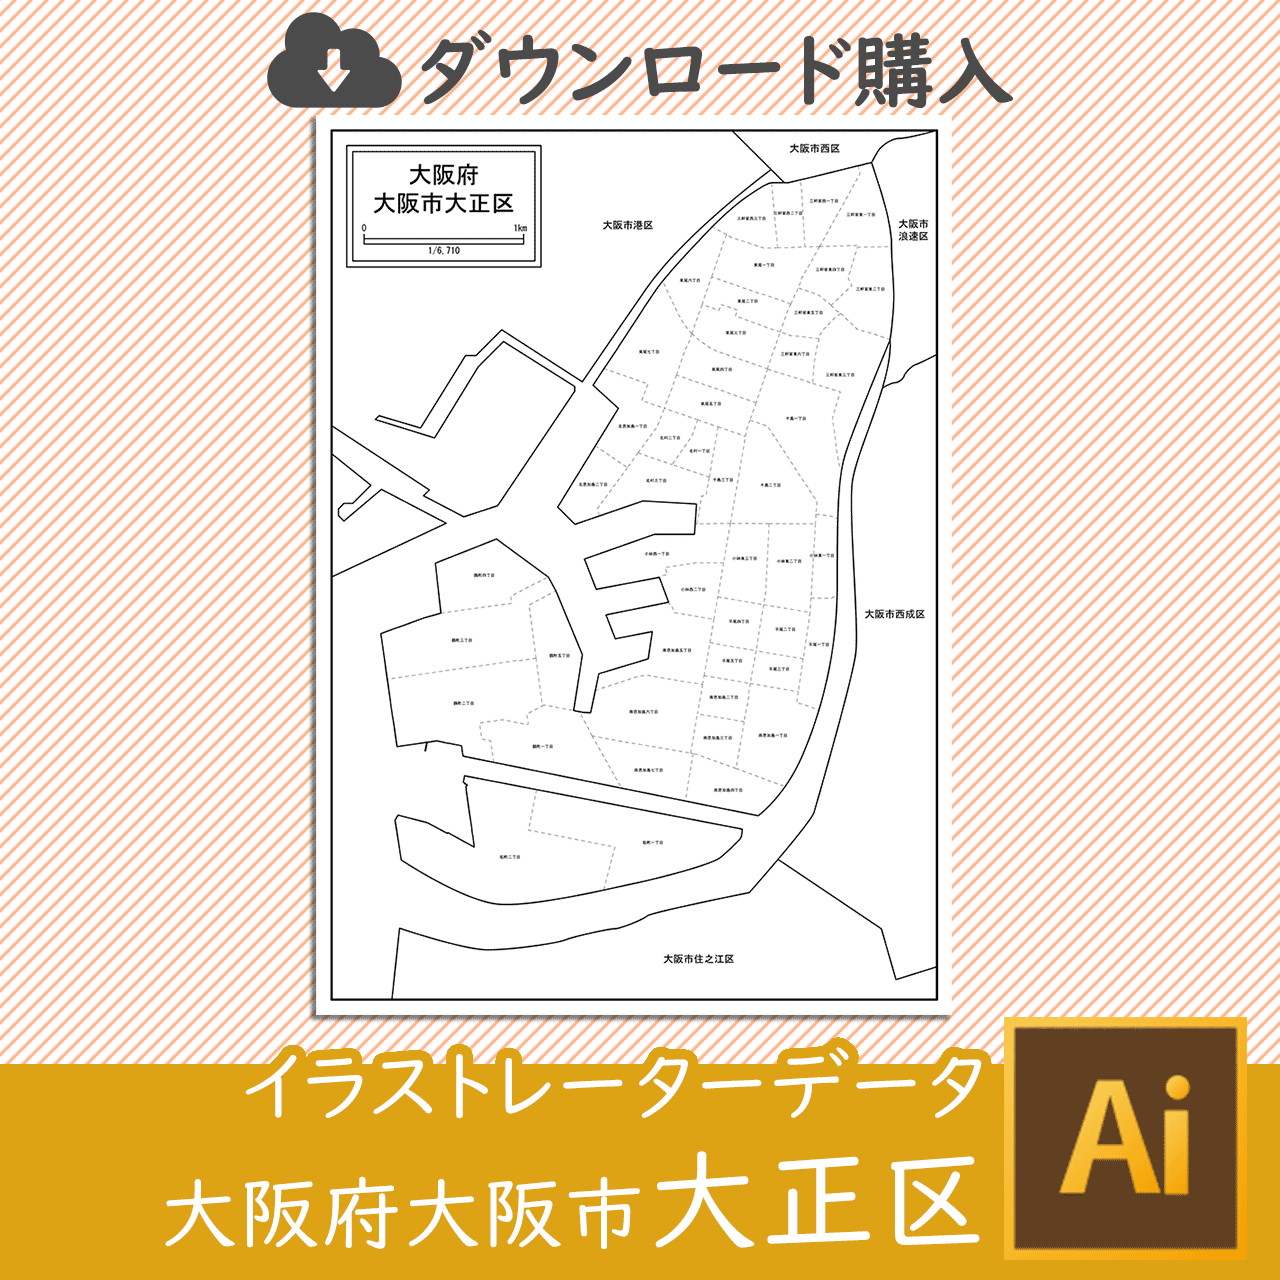 大阪市大正区のaiデータのサムネイル画像